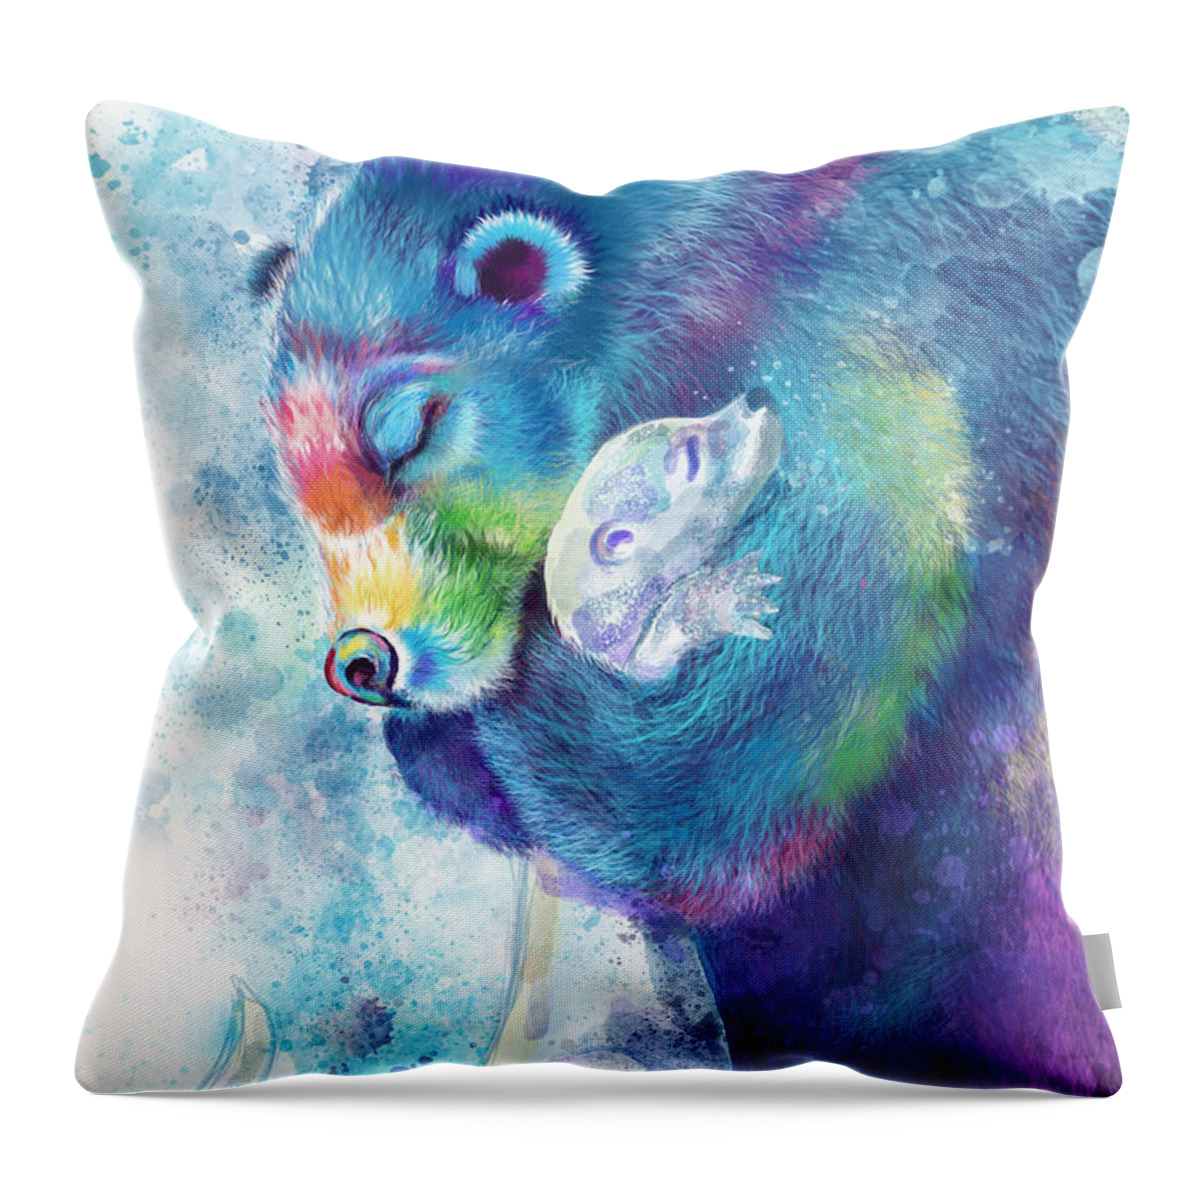 Bear Throw Pillow featuring the digital art Bear Hugs Otter by Laura Ostrowski